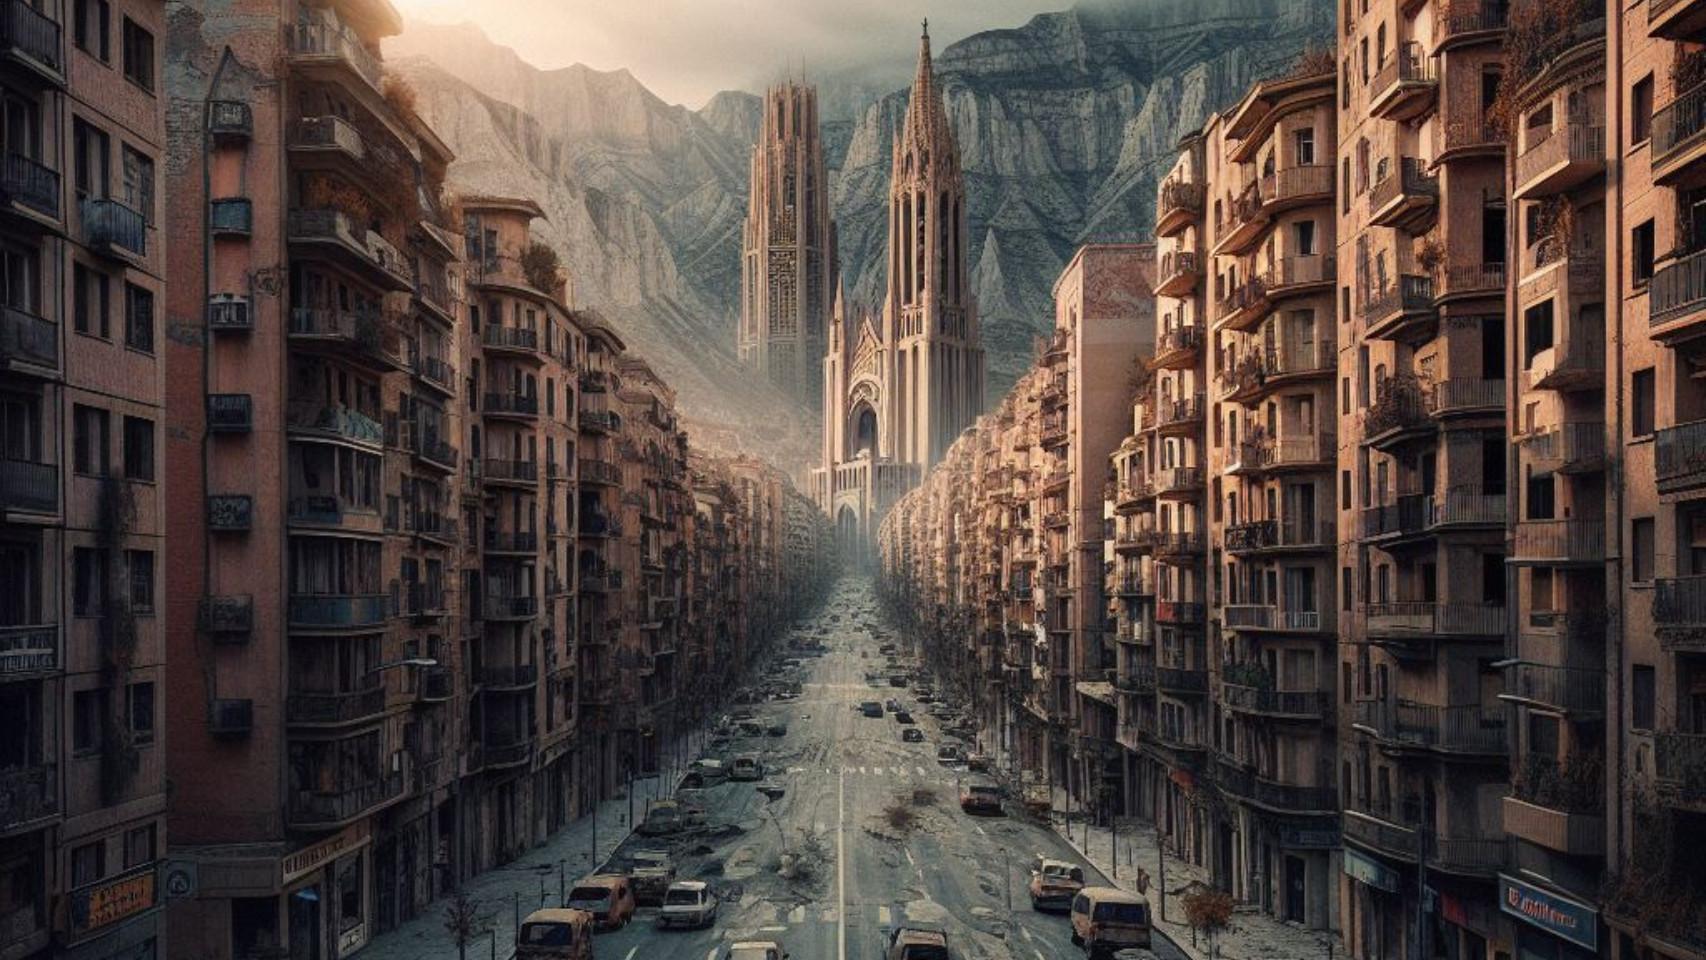 La ciudad de Alcoy desolada, en una imagen creada por Bing Image Creator